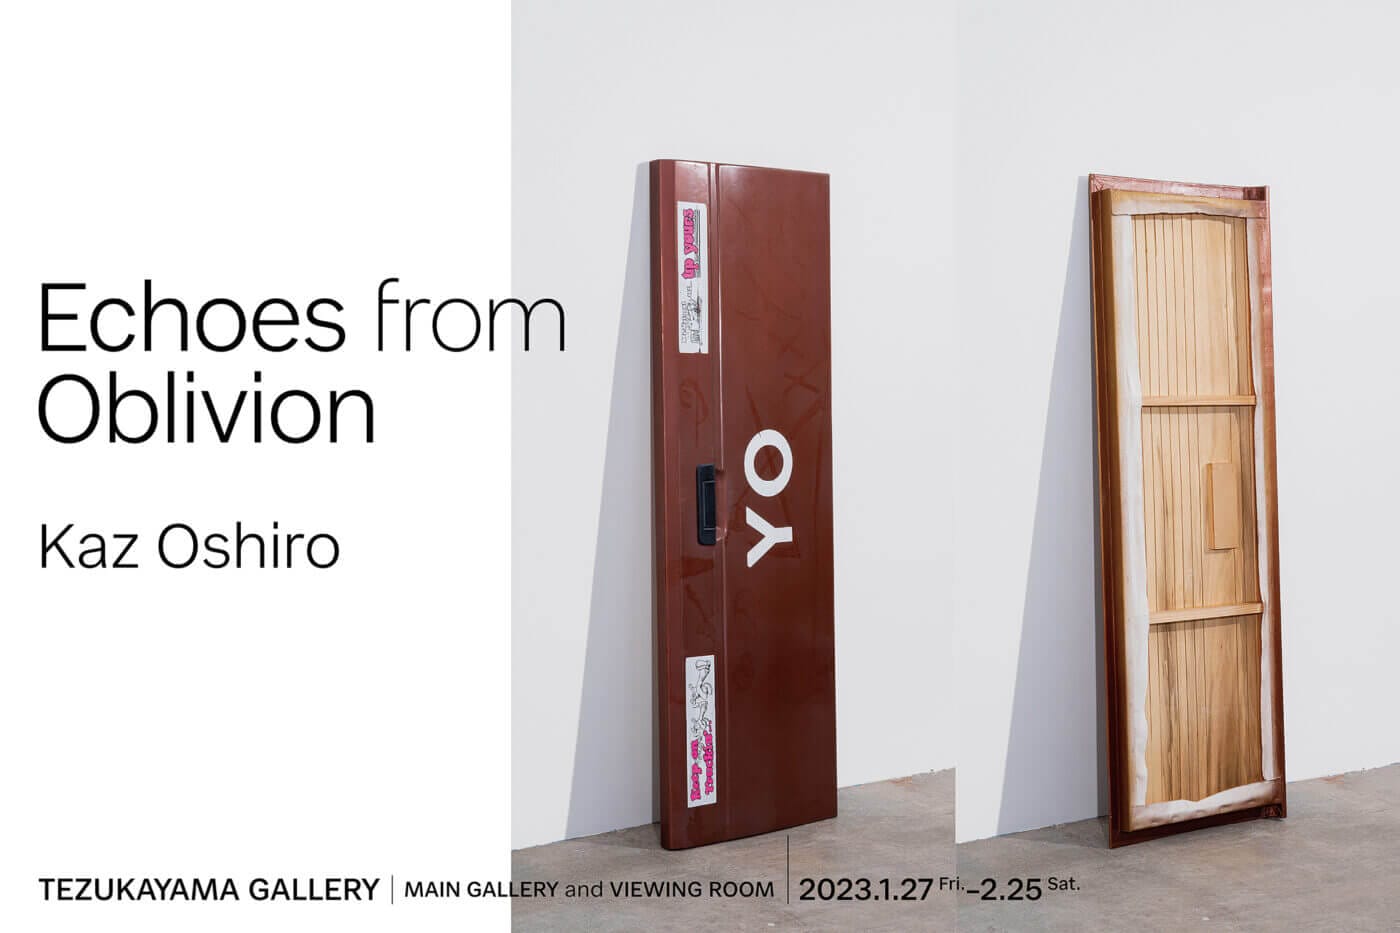 さまざまな二項対立の上に立ち、絵画とは何か、ARTとは何か、という根源的な問いを投げかける作品を制作。カズ・オオシロの大阪での初個展「Echoes from Oblivion」がTEZUKAYAMA GALLERYにて開催。